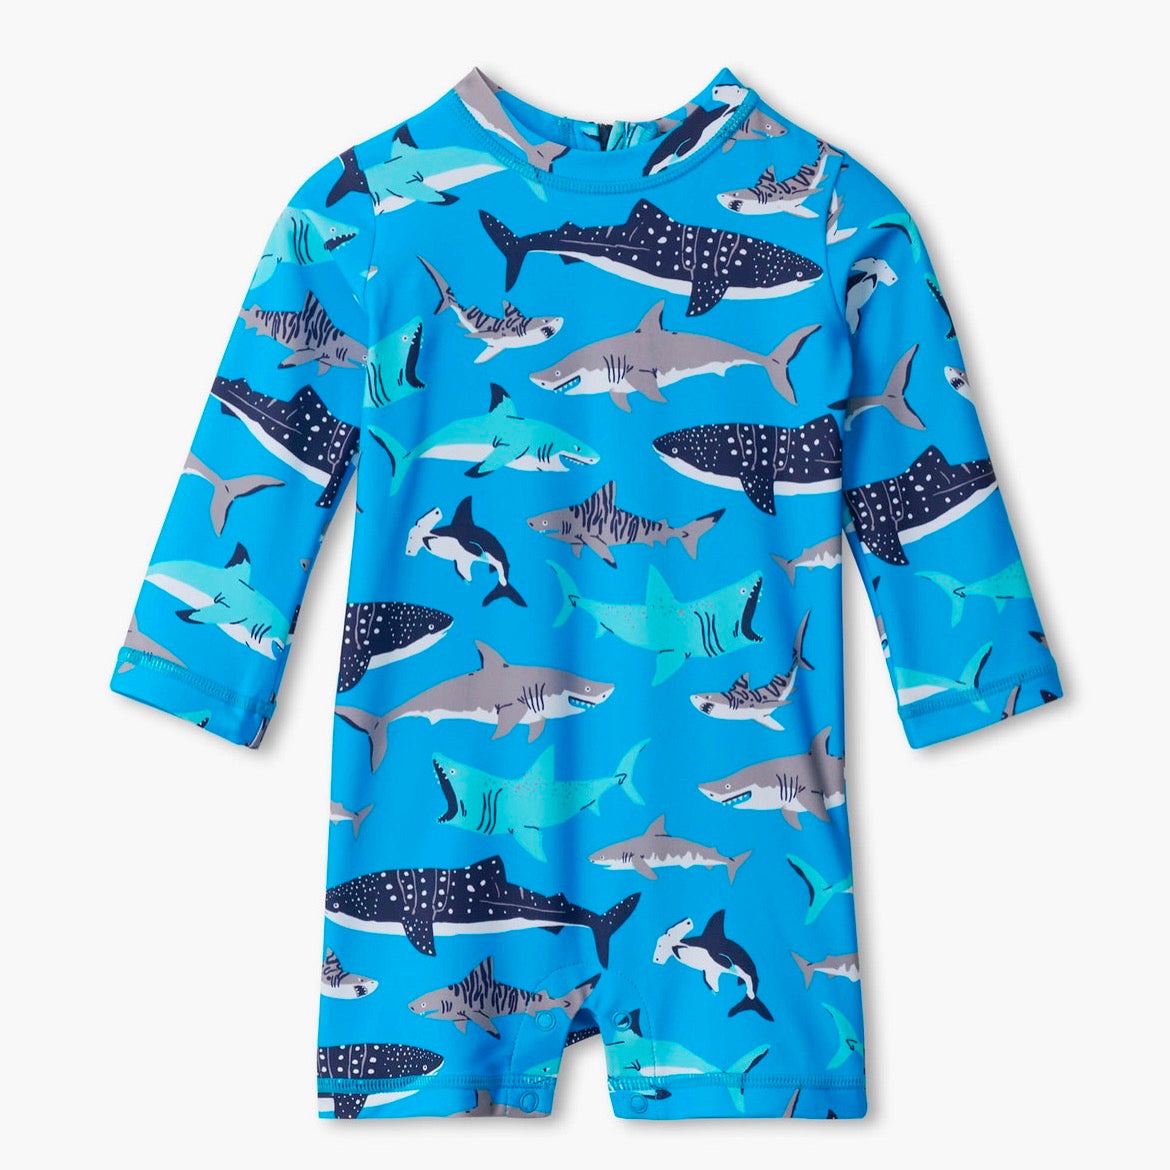 Hatley Infant Rashguard S22tsi908b Shark Clothing 6-9M / Blue,9-12M / Blue,12-18M / Blue,18-24M / Blue